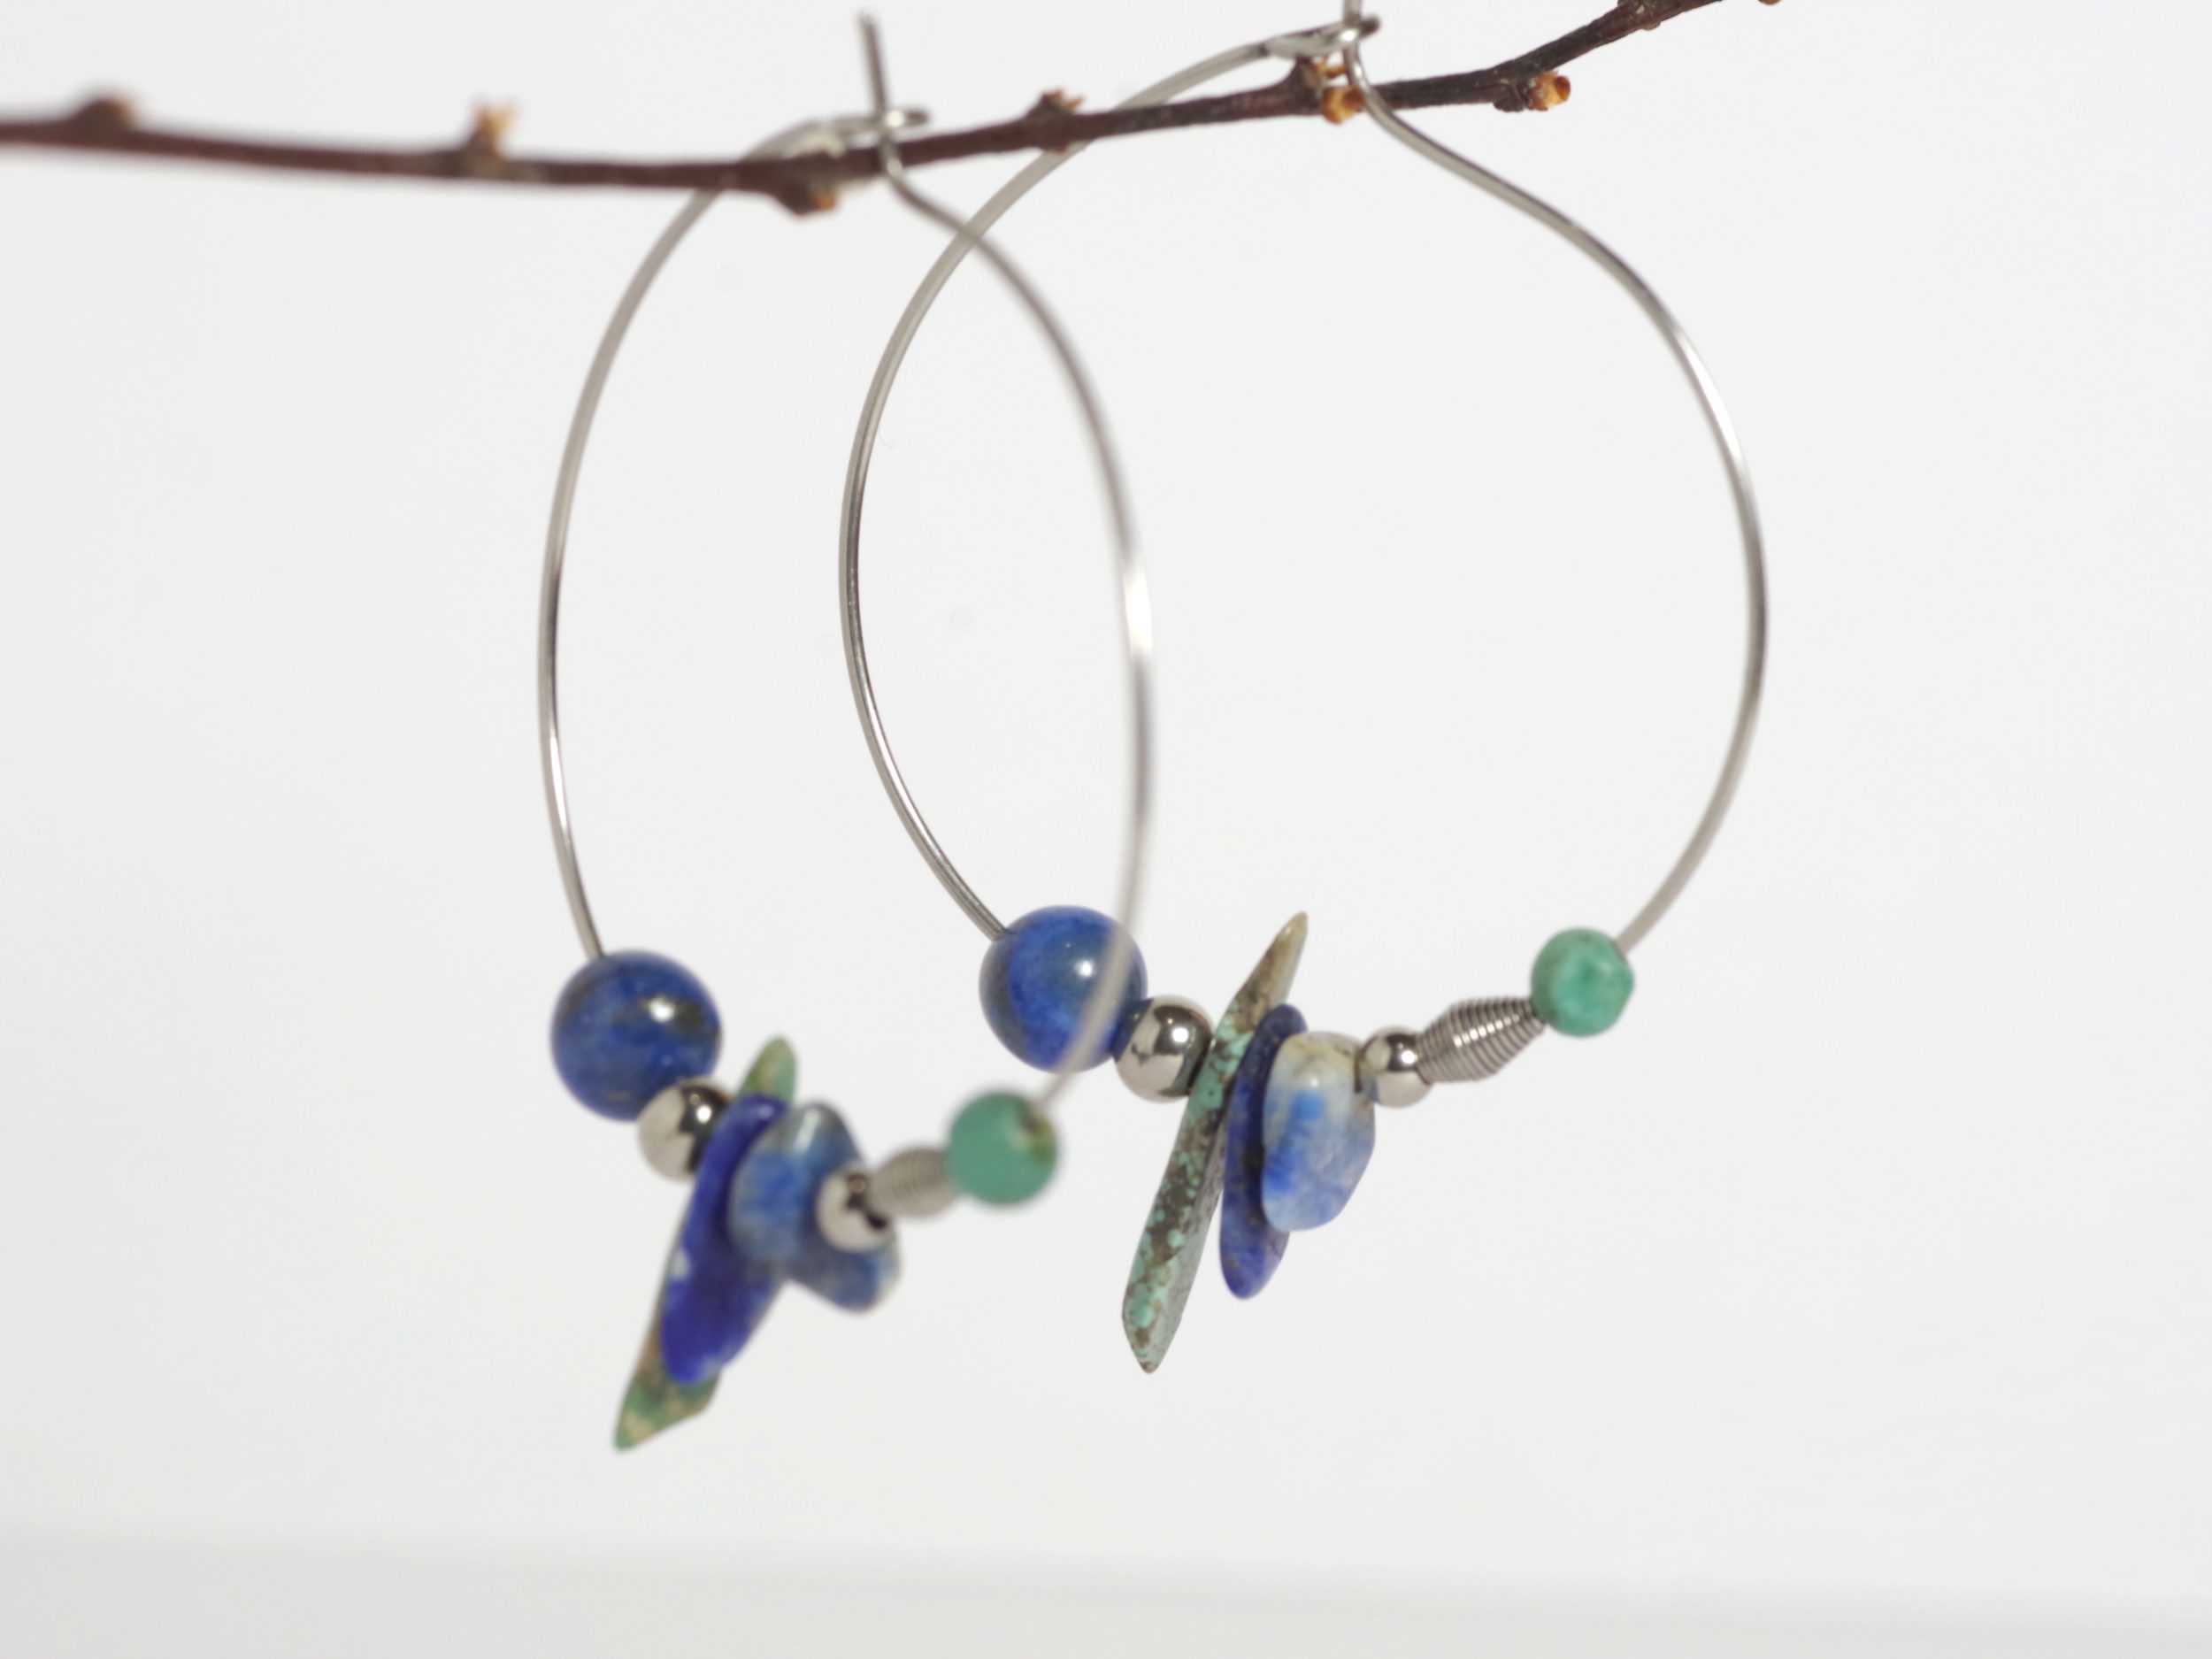 Boucles d'oreilles créoles avec des pierres bleues de formes et couleurs variées : mélange de turquoise et lapis lazuli. créoles en inox.